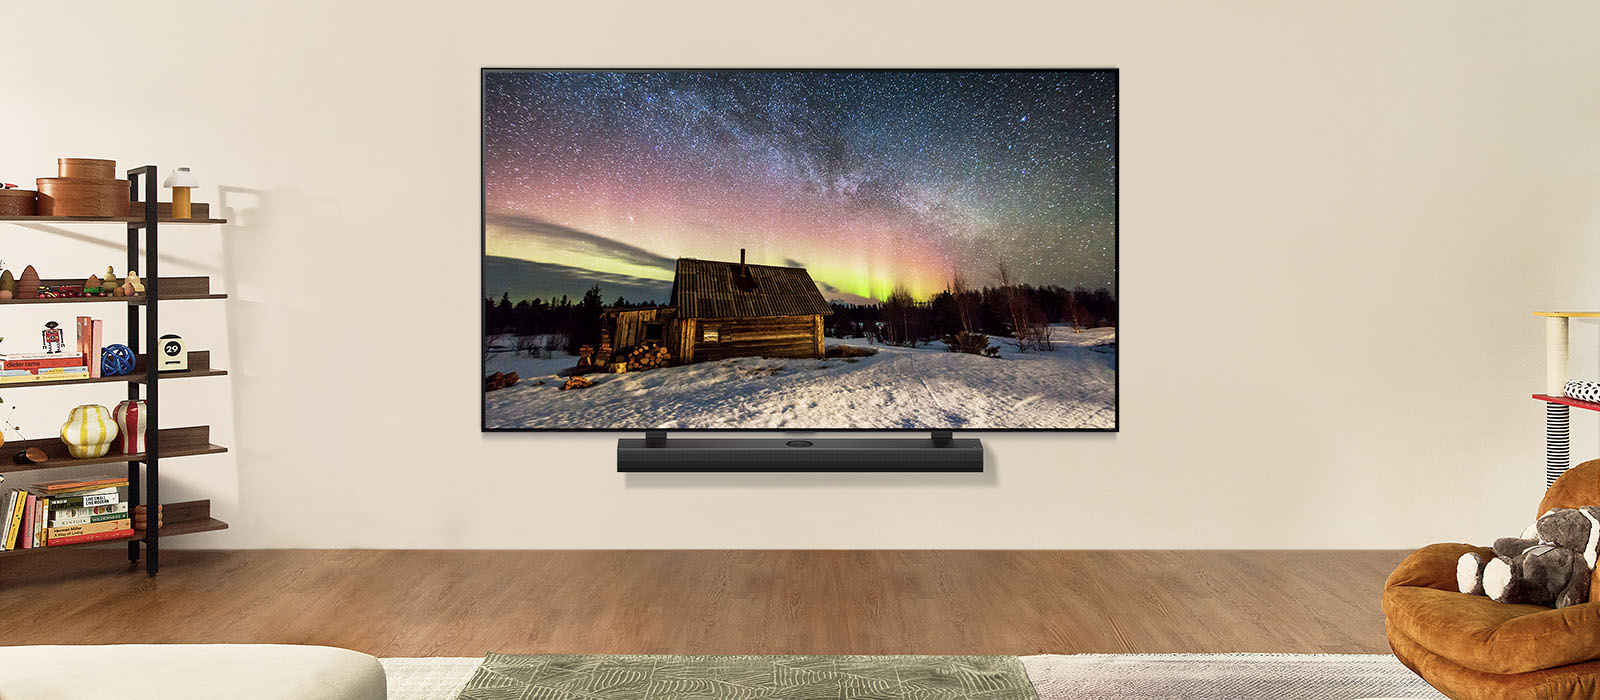 Изображение на LG телевизор и LG Soundbar в съвременен дом през деня. На изображението се вижда полярното сияние с идеалното ниво на яркост.